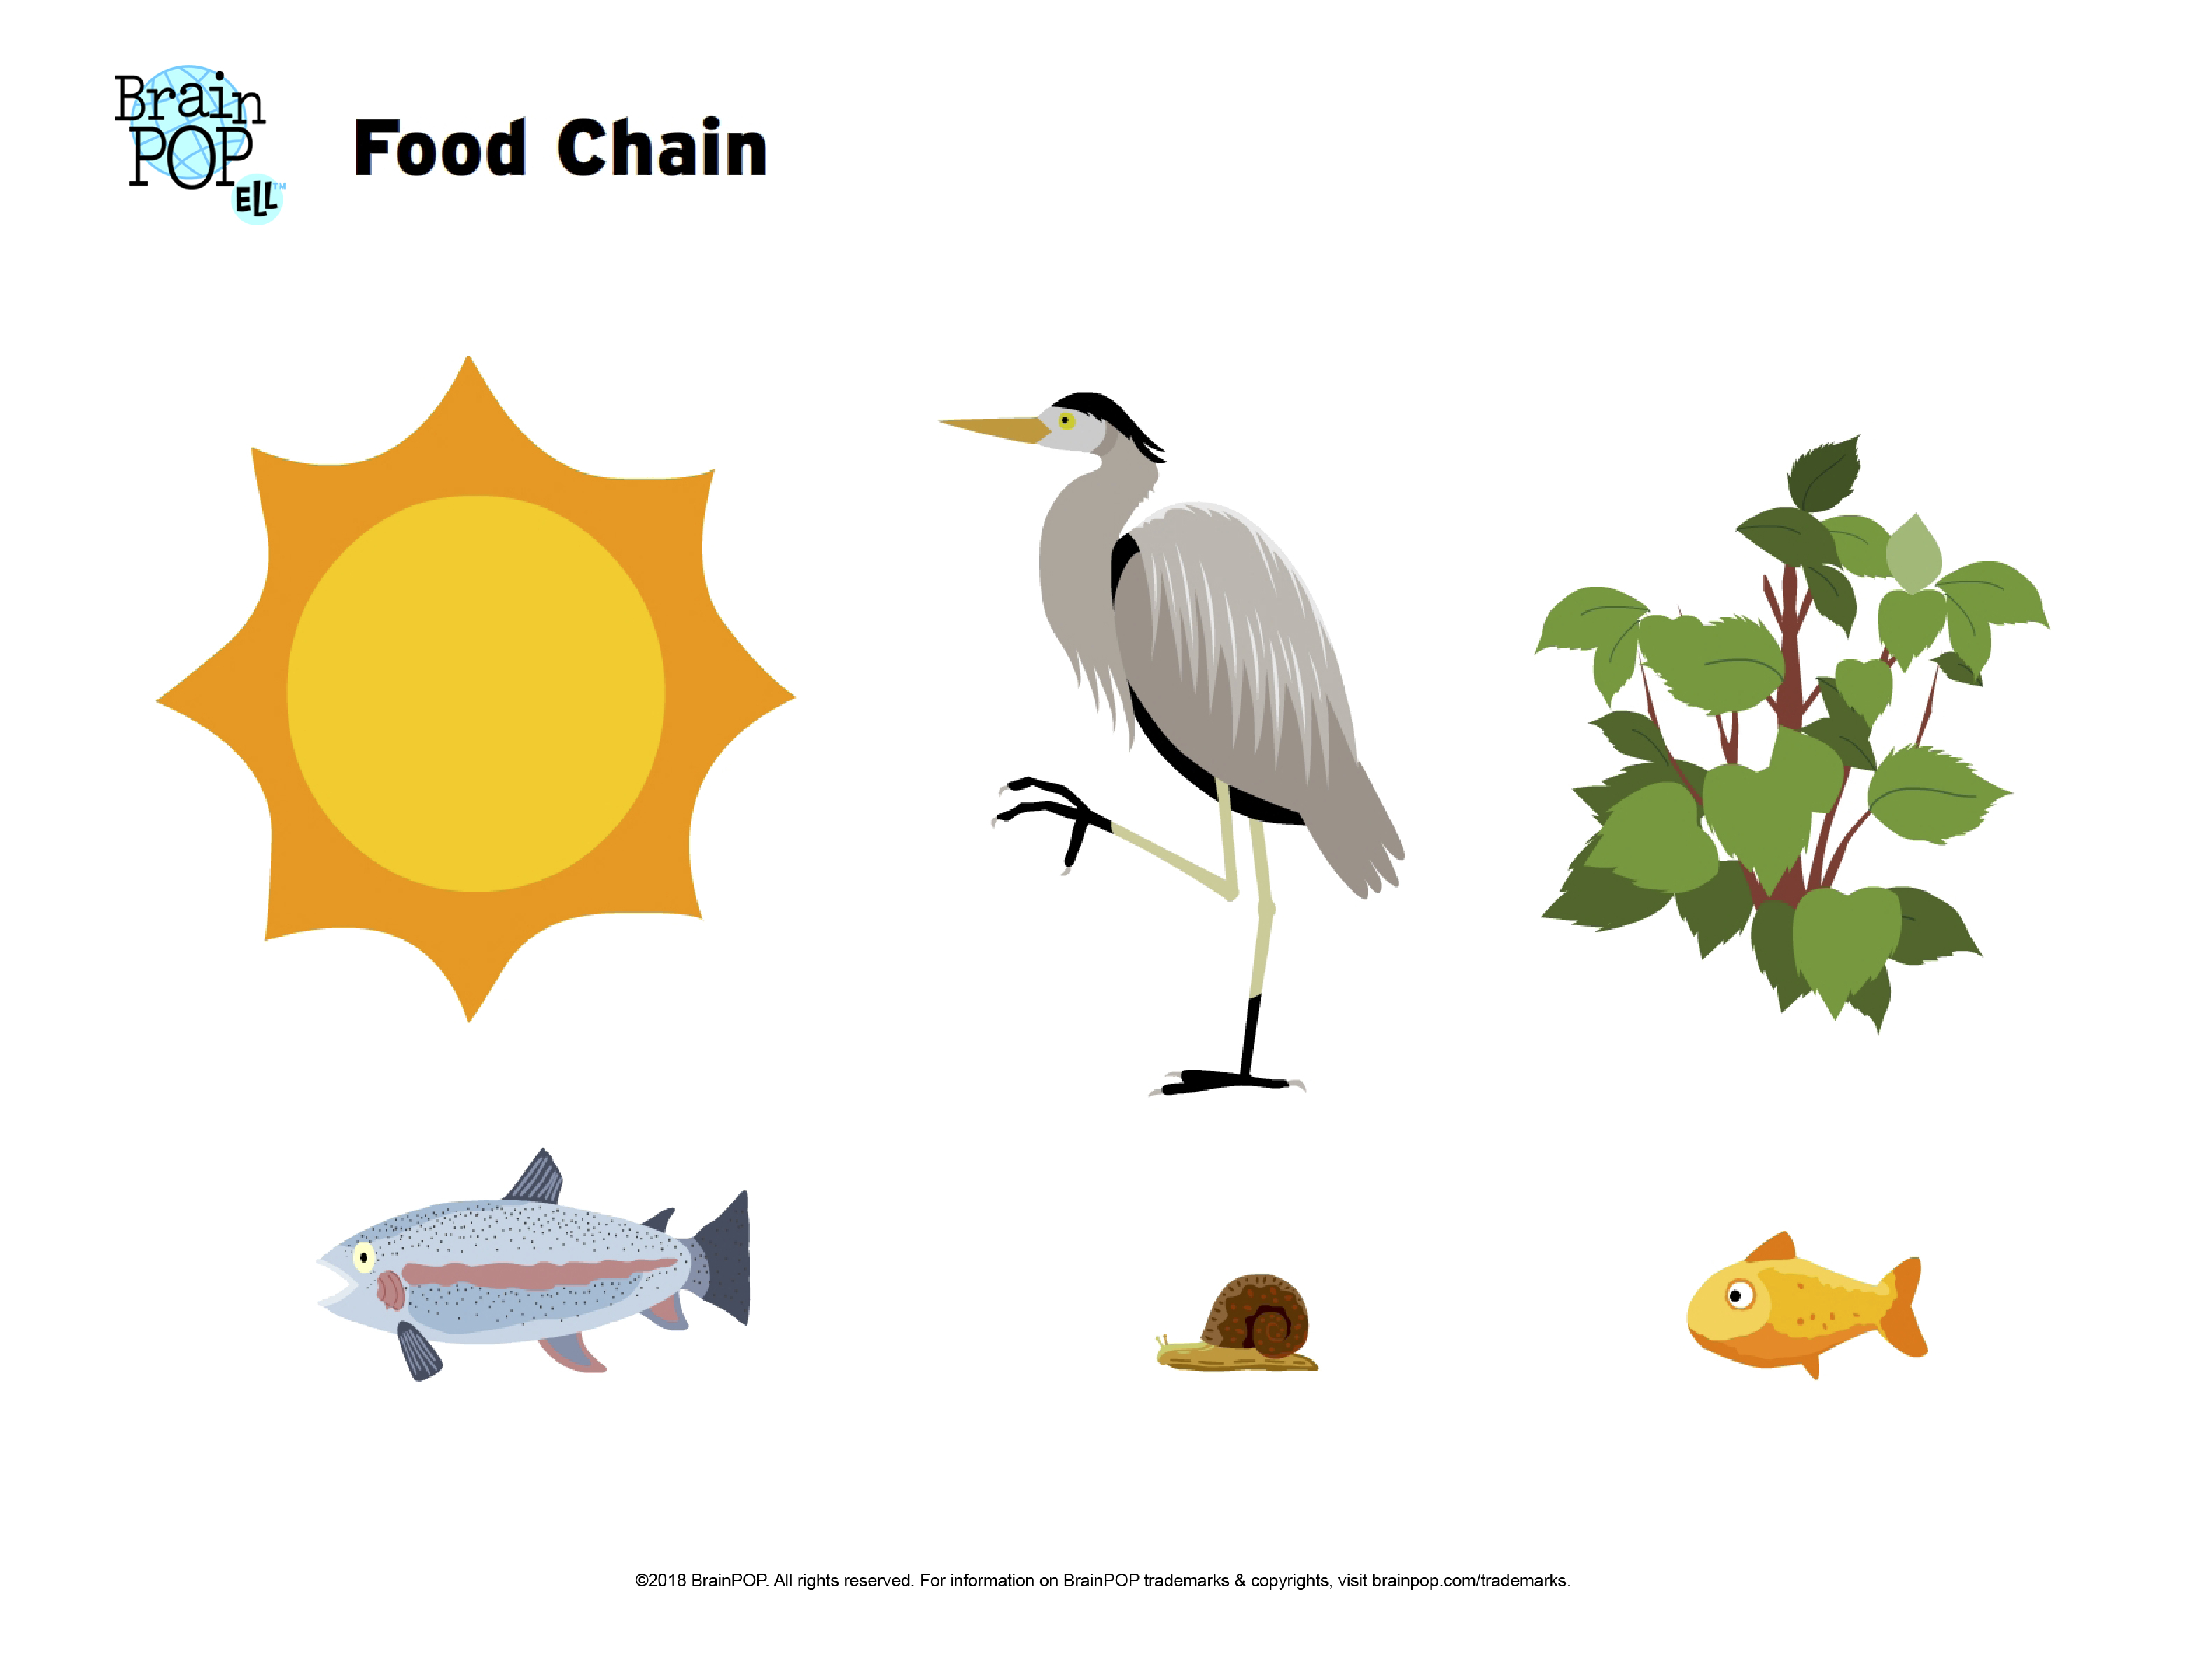 Food Chain Image Worksheet  Brainpop Educators Inside Food Chain Worksheet Pdf